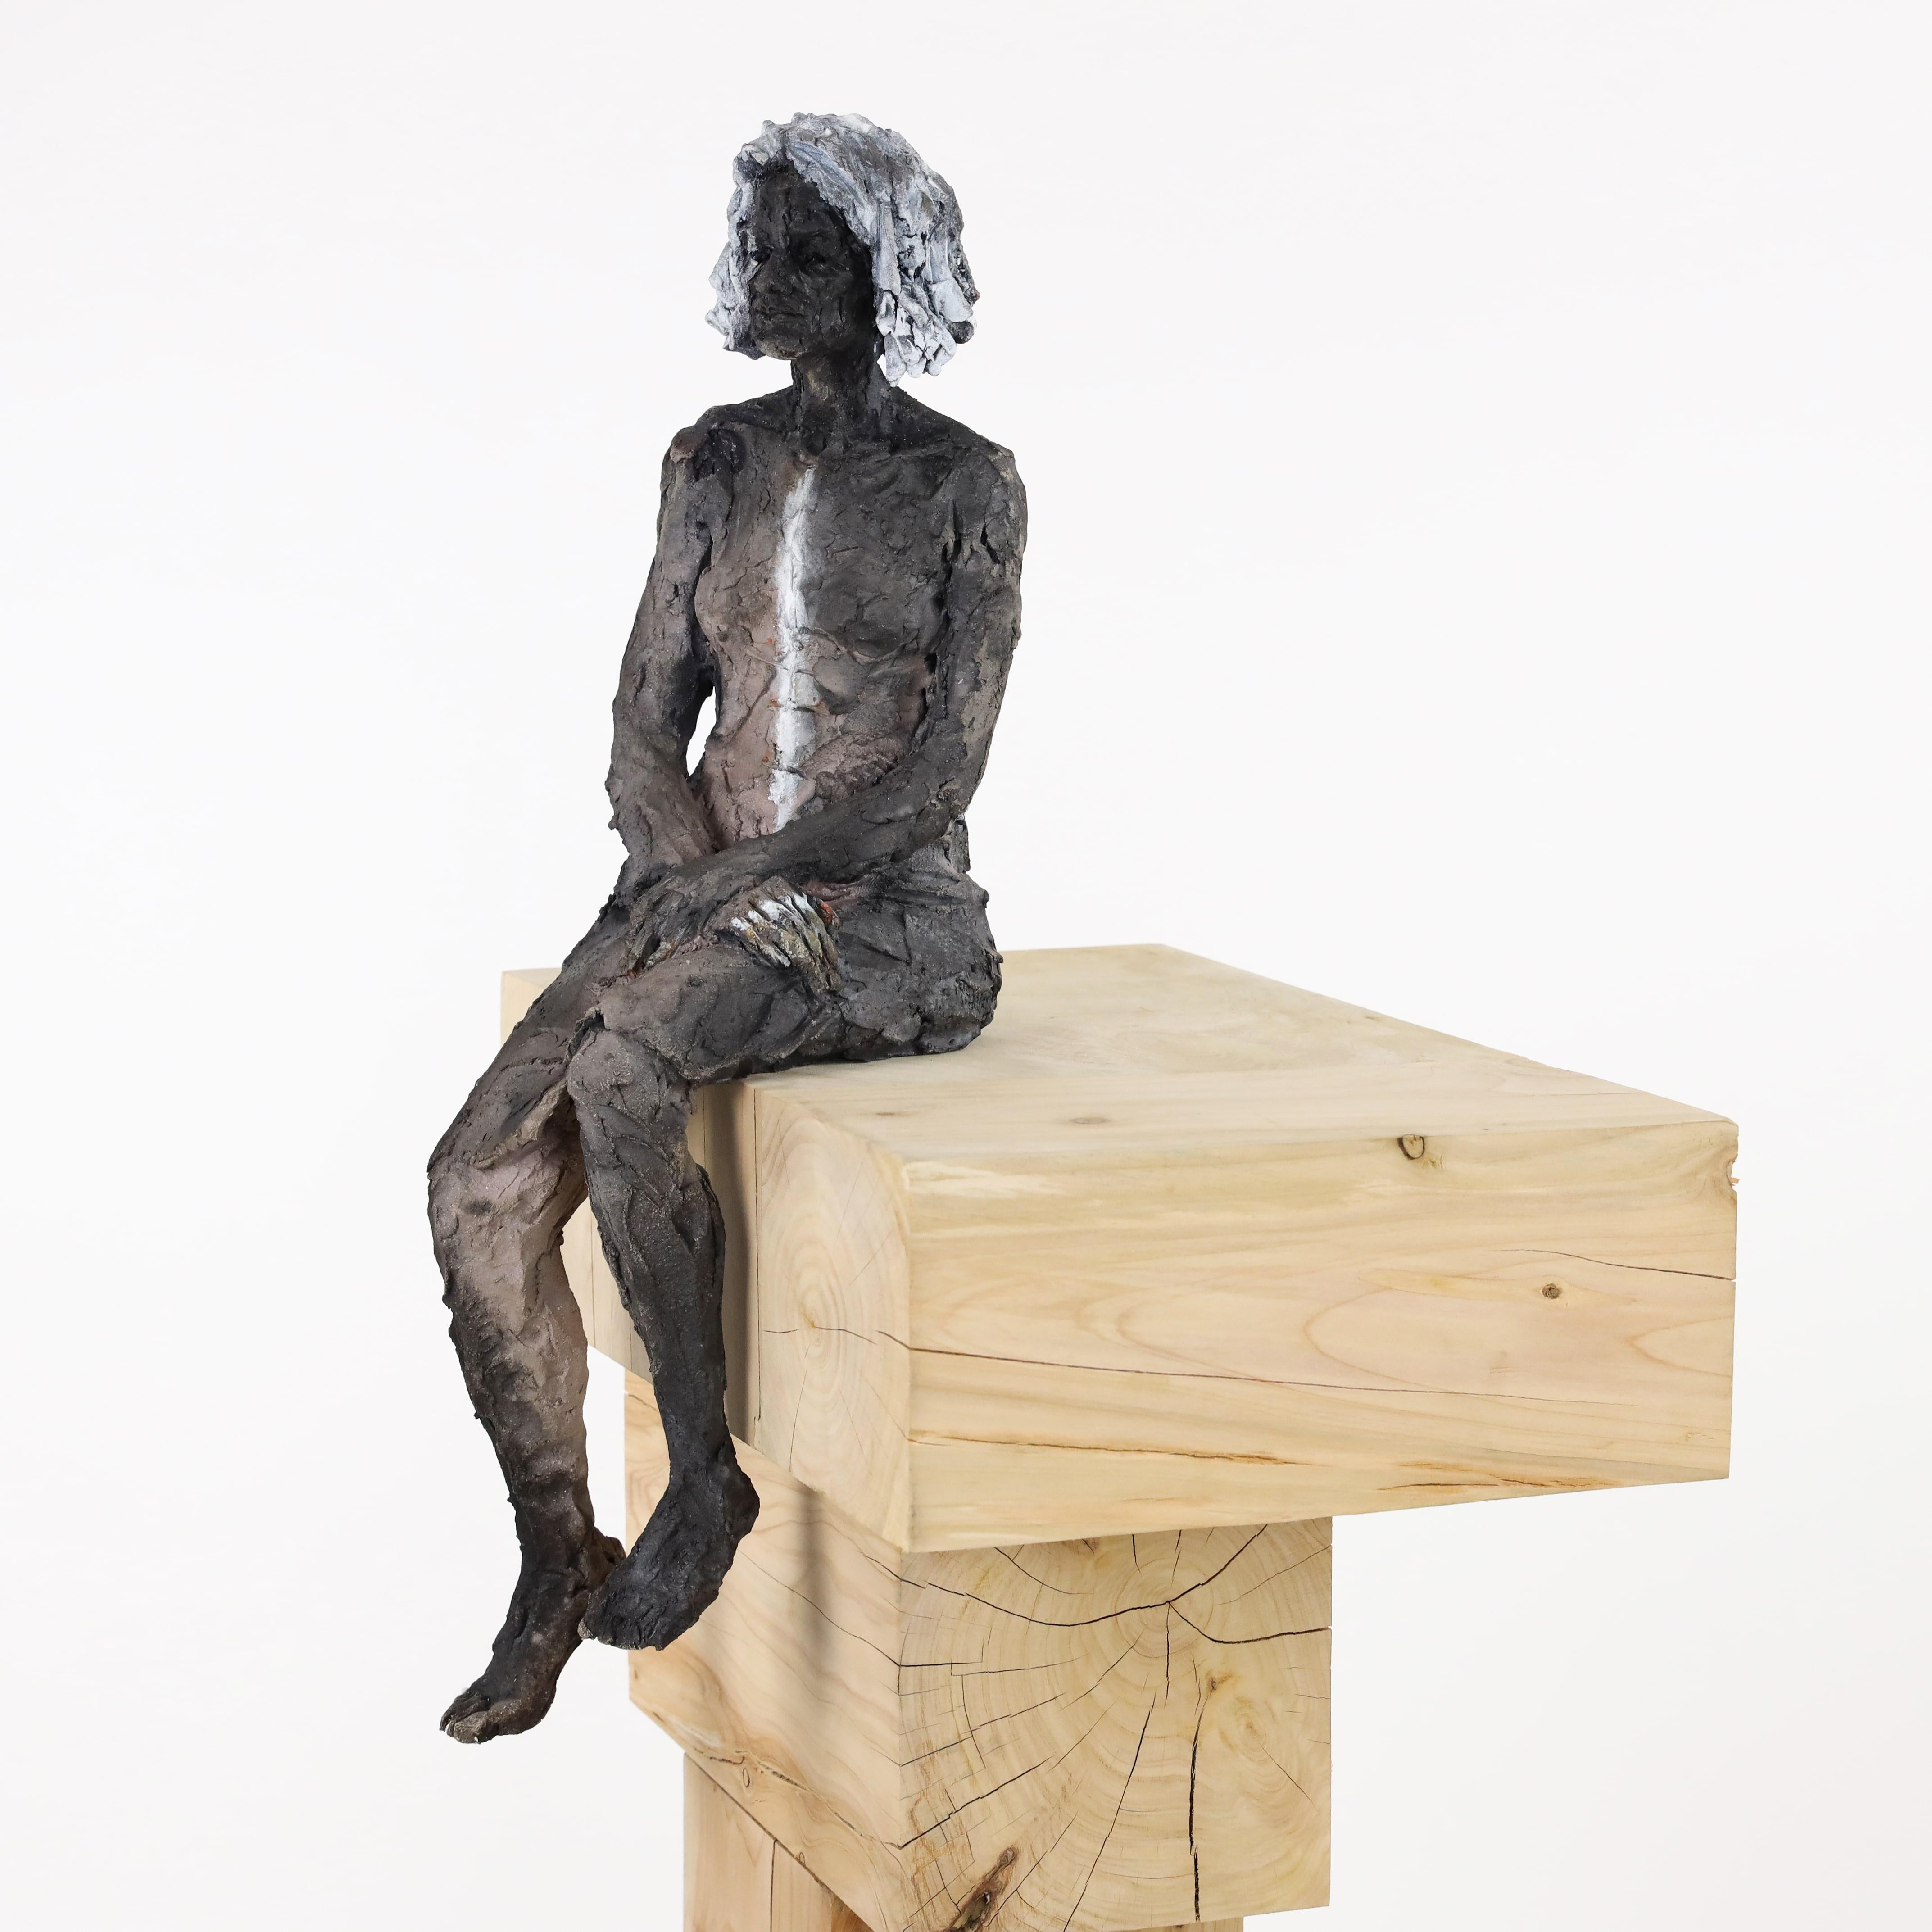 Die Akte – weibliches Porträt, Keramikskulptur (Zeitgenössisch), Sculpture, von Cécile Raynal